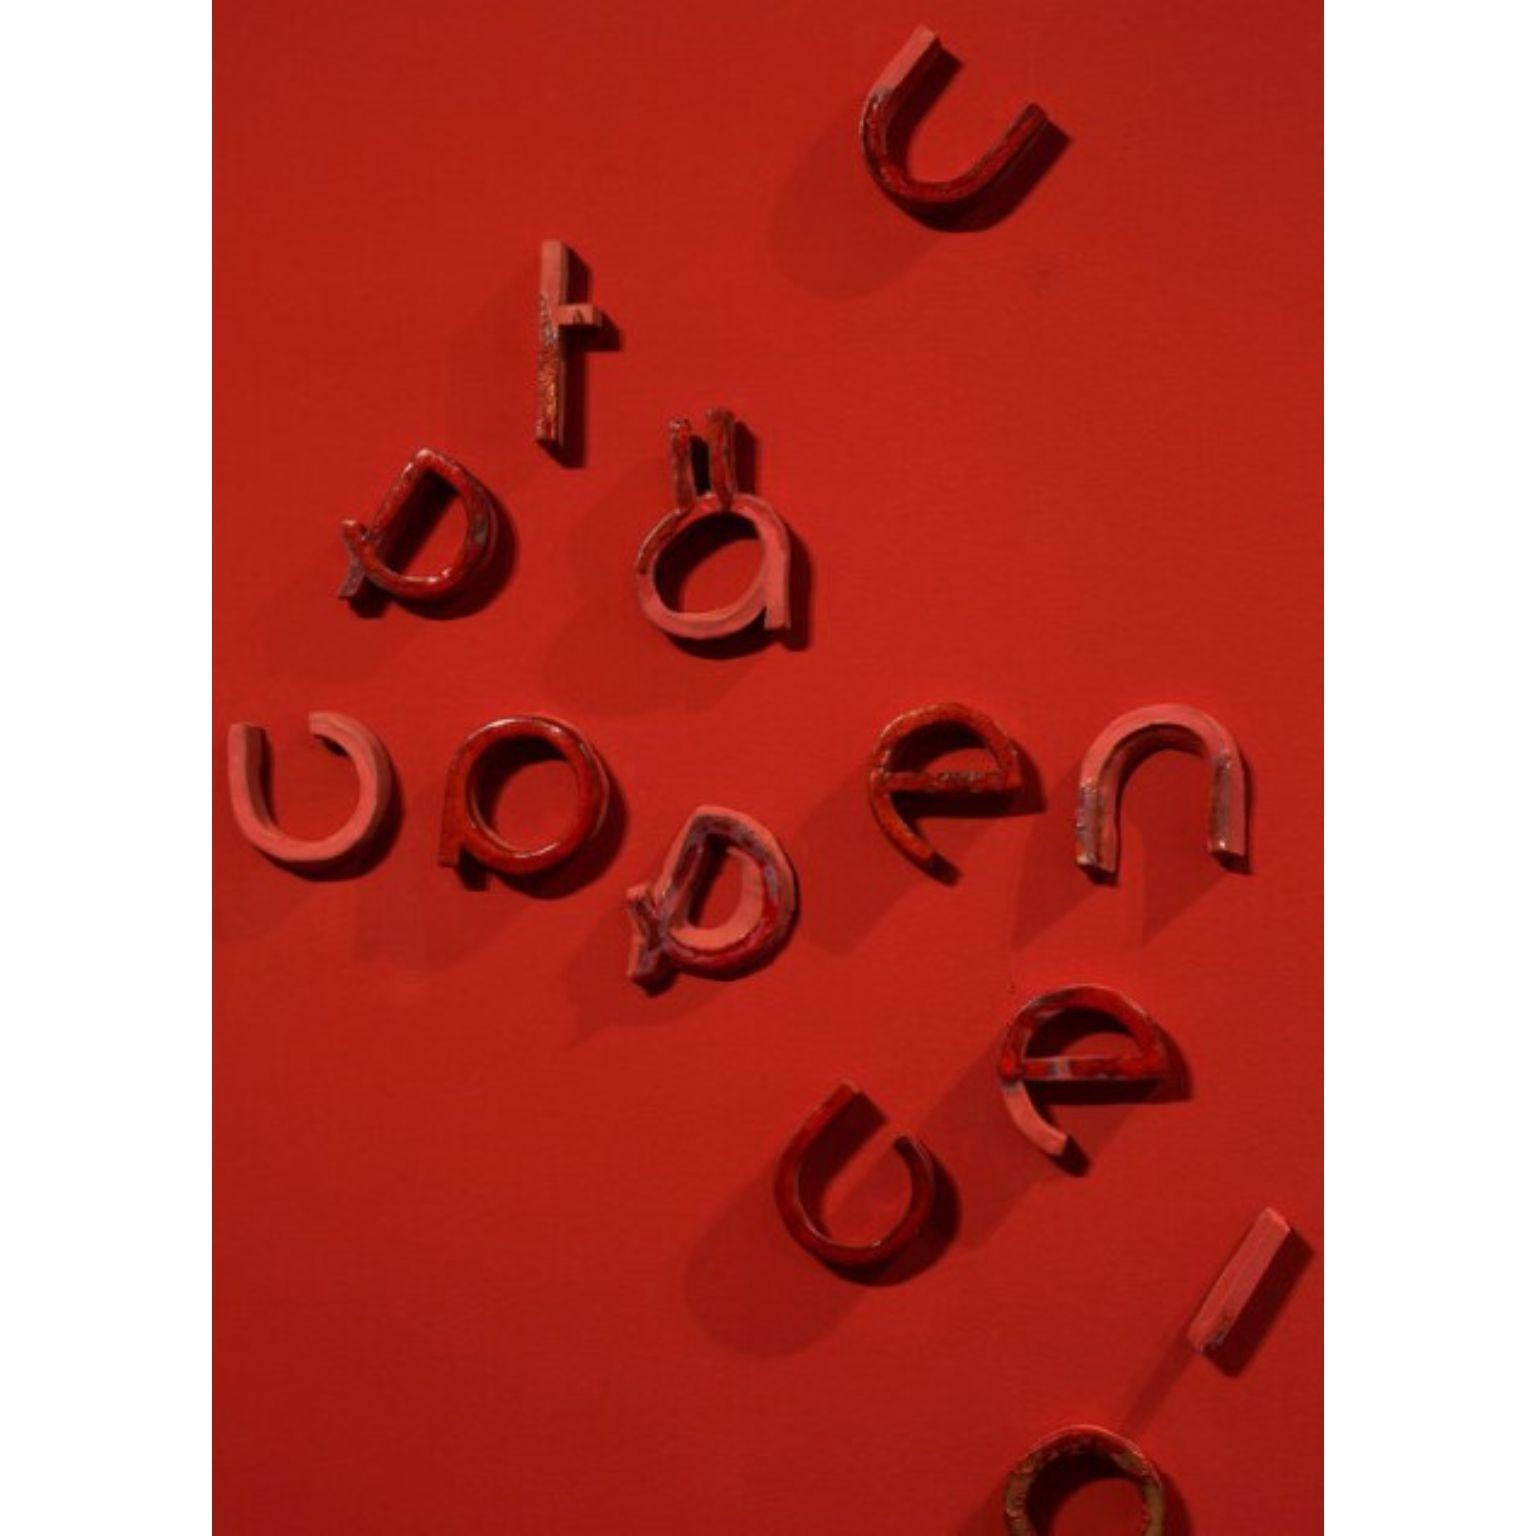 In Between Letters Kleine Installation von Tero Kuitunen (Postmoderne) im Angebot